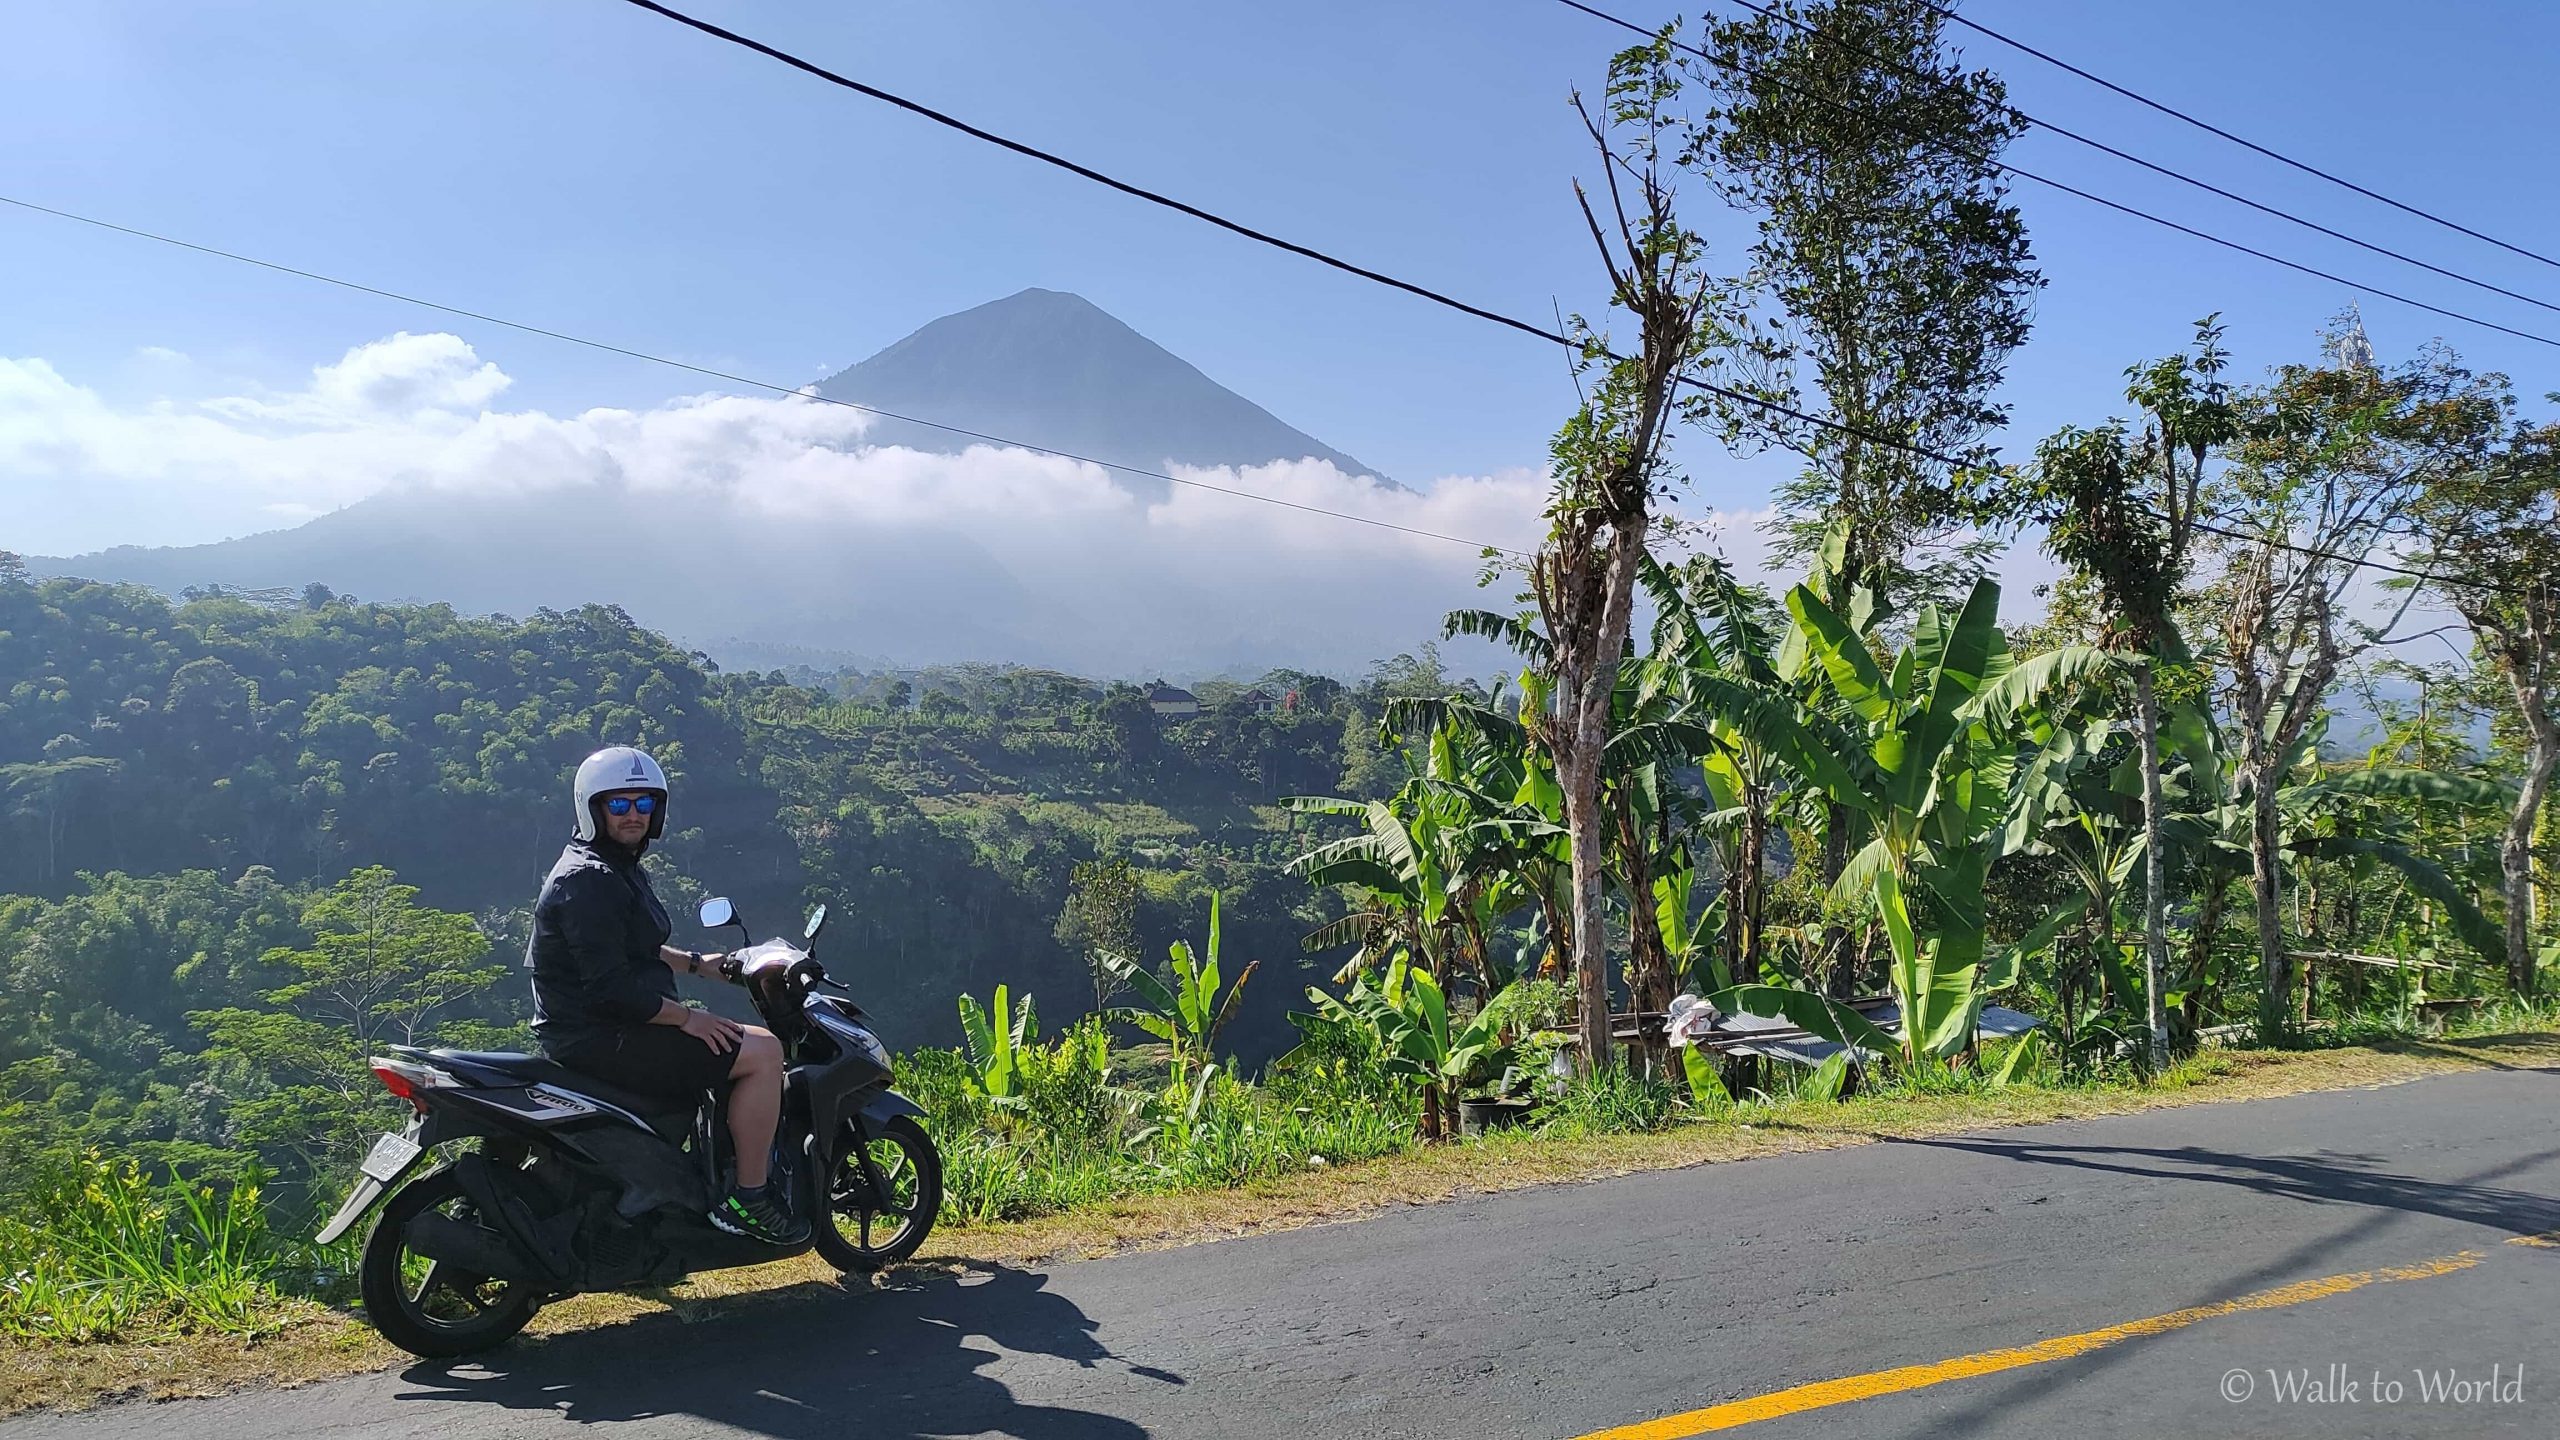 Guidare lo scooter in Indonesia: cose da sapere!